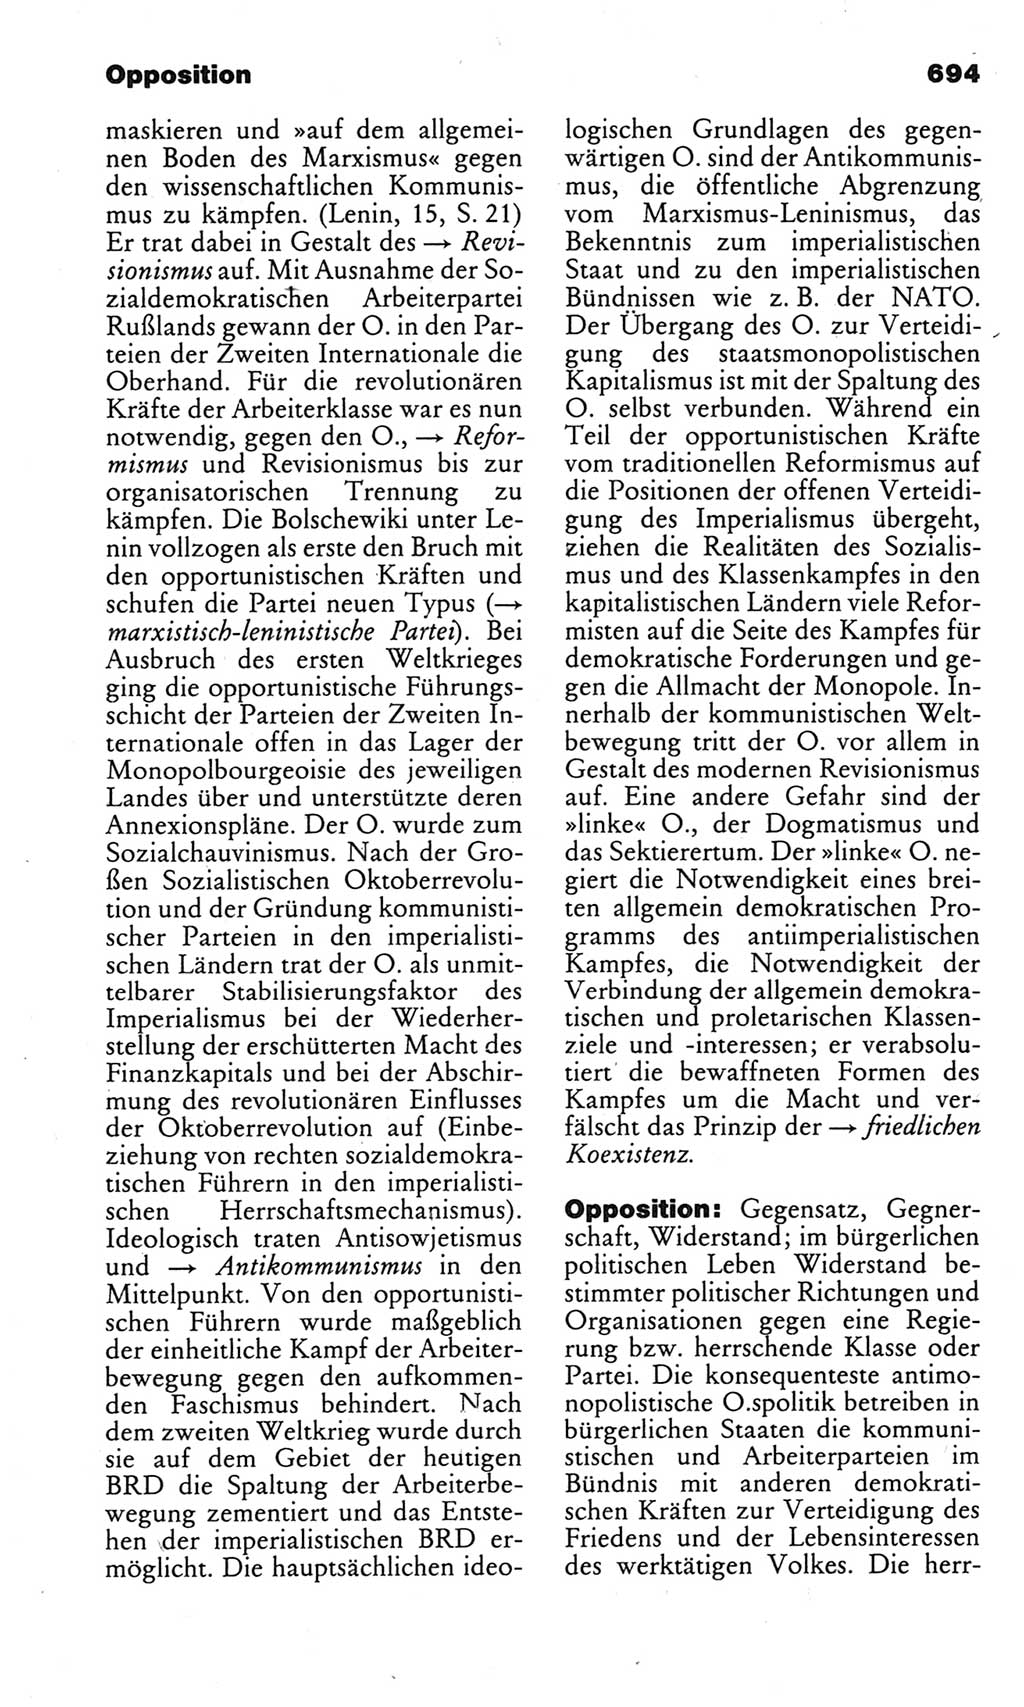 Kleines politisches Wörterbuch [Deutsche Demokratische Republik (DDR)] 1983, Seite 694 (Kl. pol. Wb. DDR 1983, S. 694)